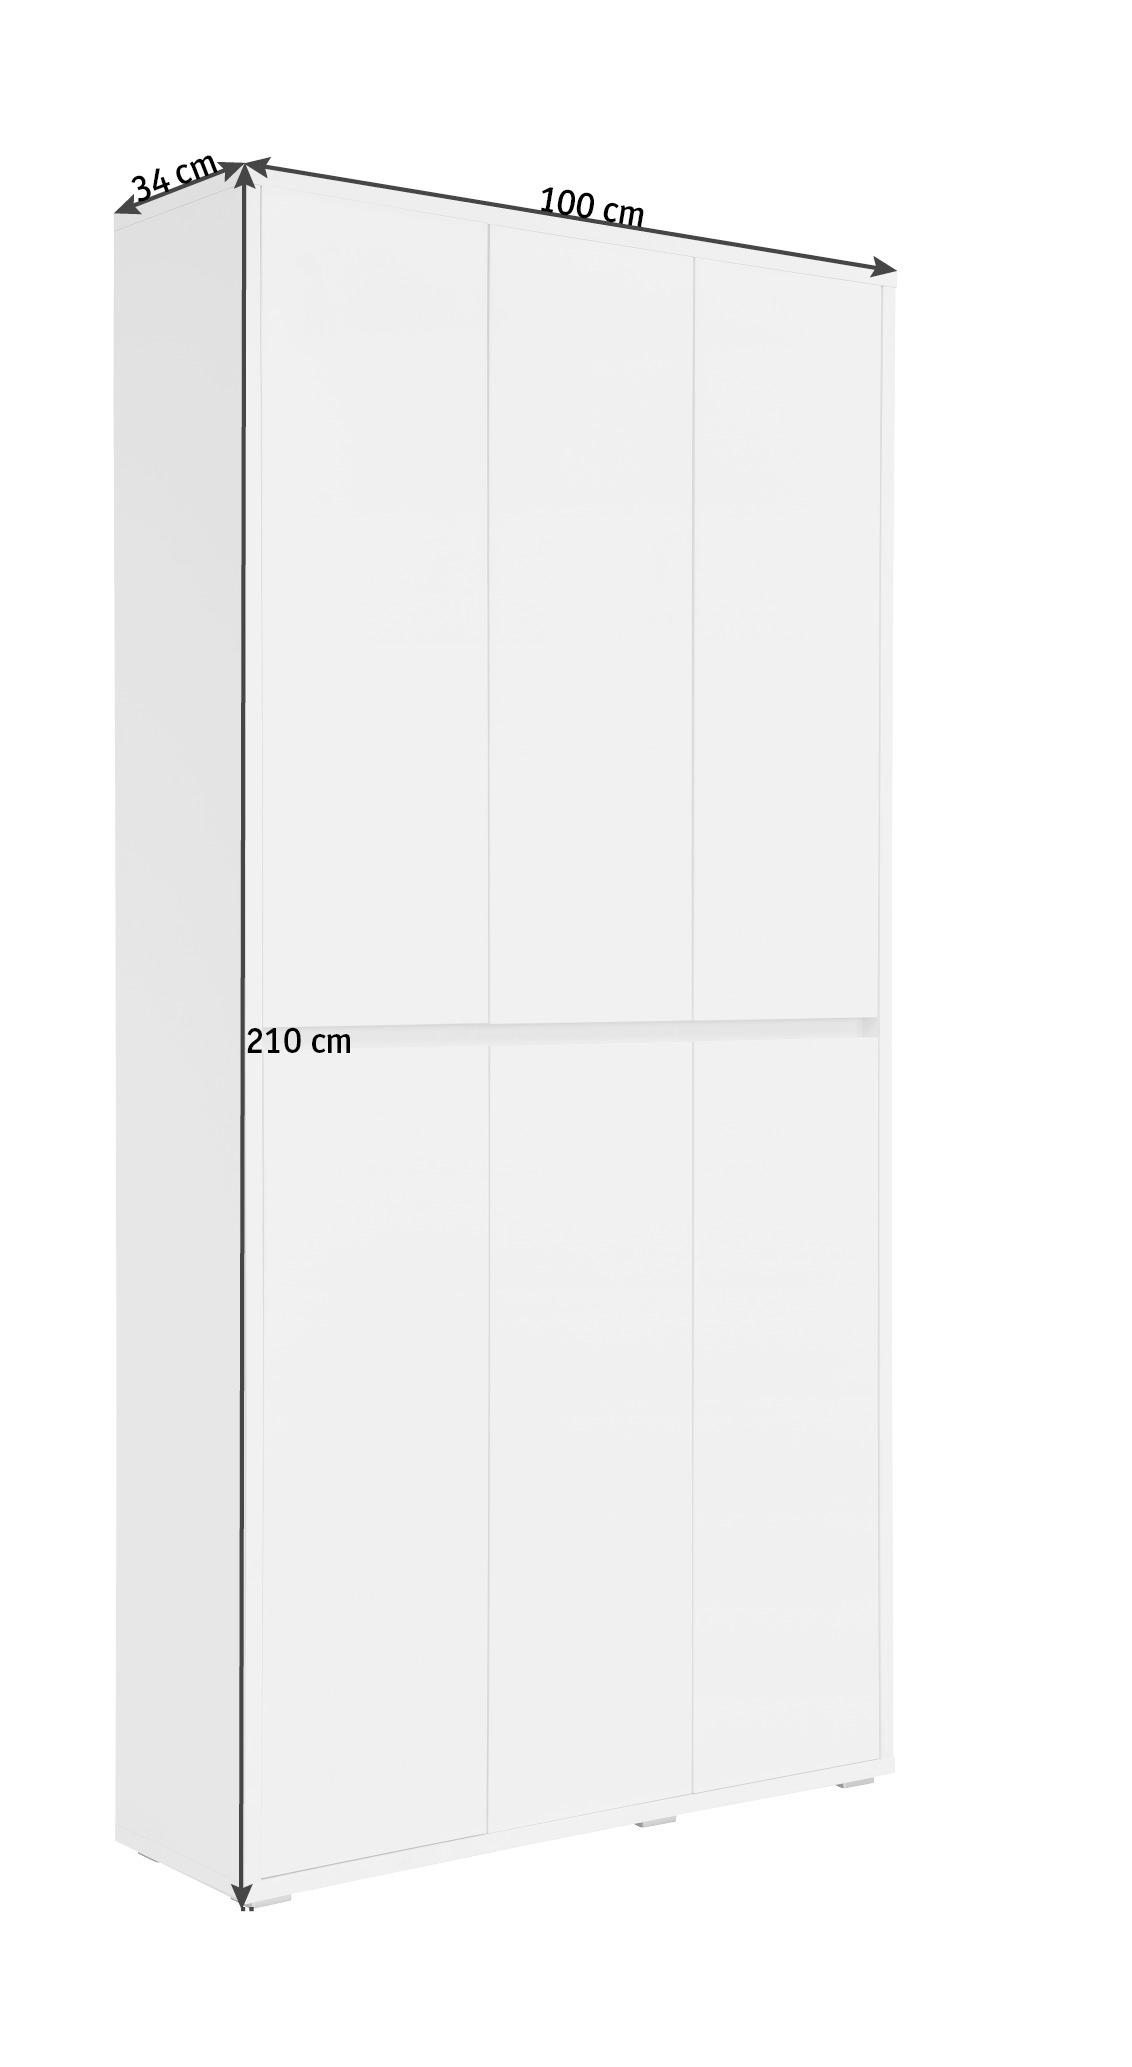 SCHUHSCHRANK Weiß  - Weiß, KONVENTIONELL (100/210/34cm) - Xora